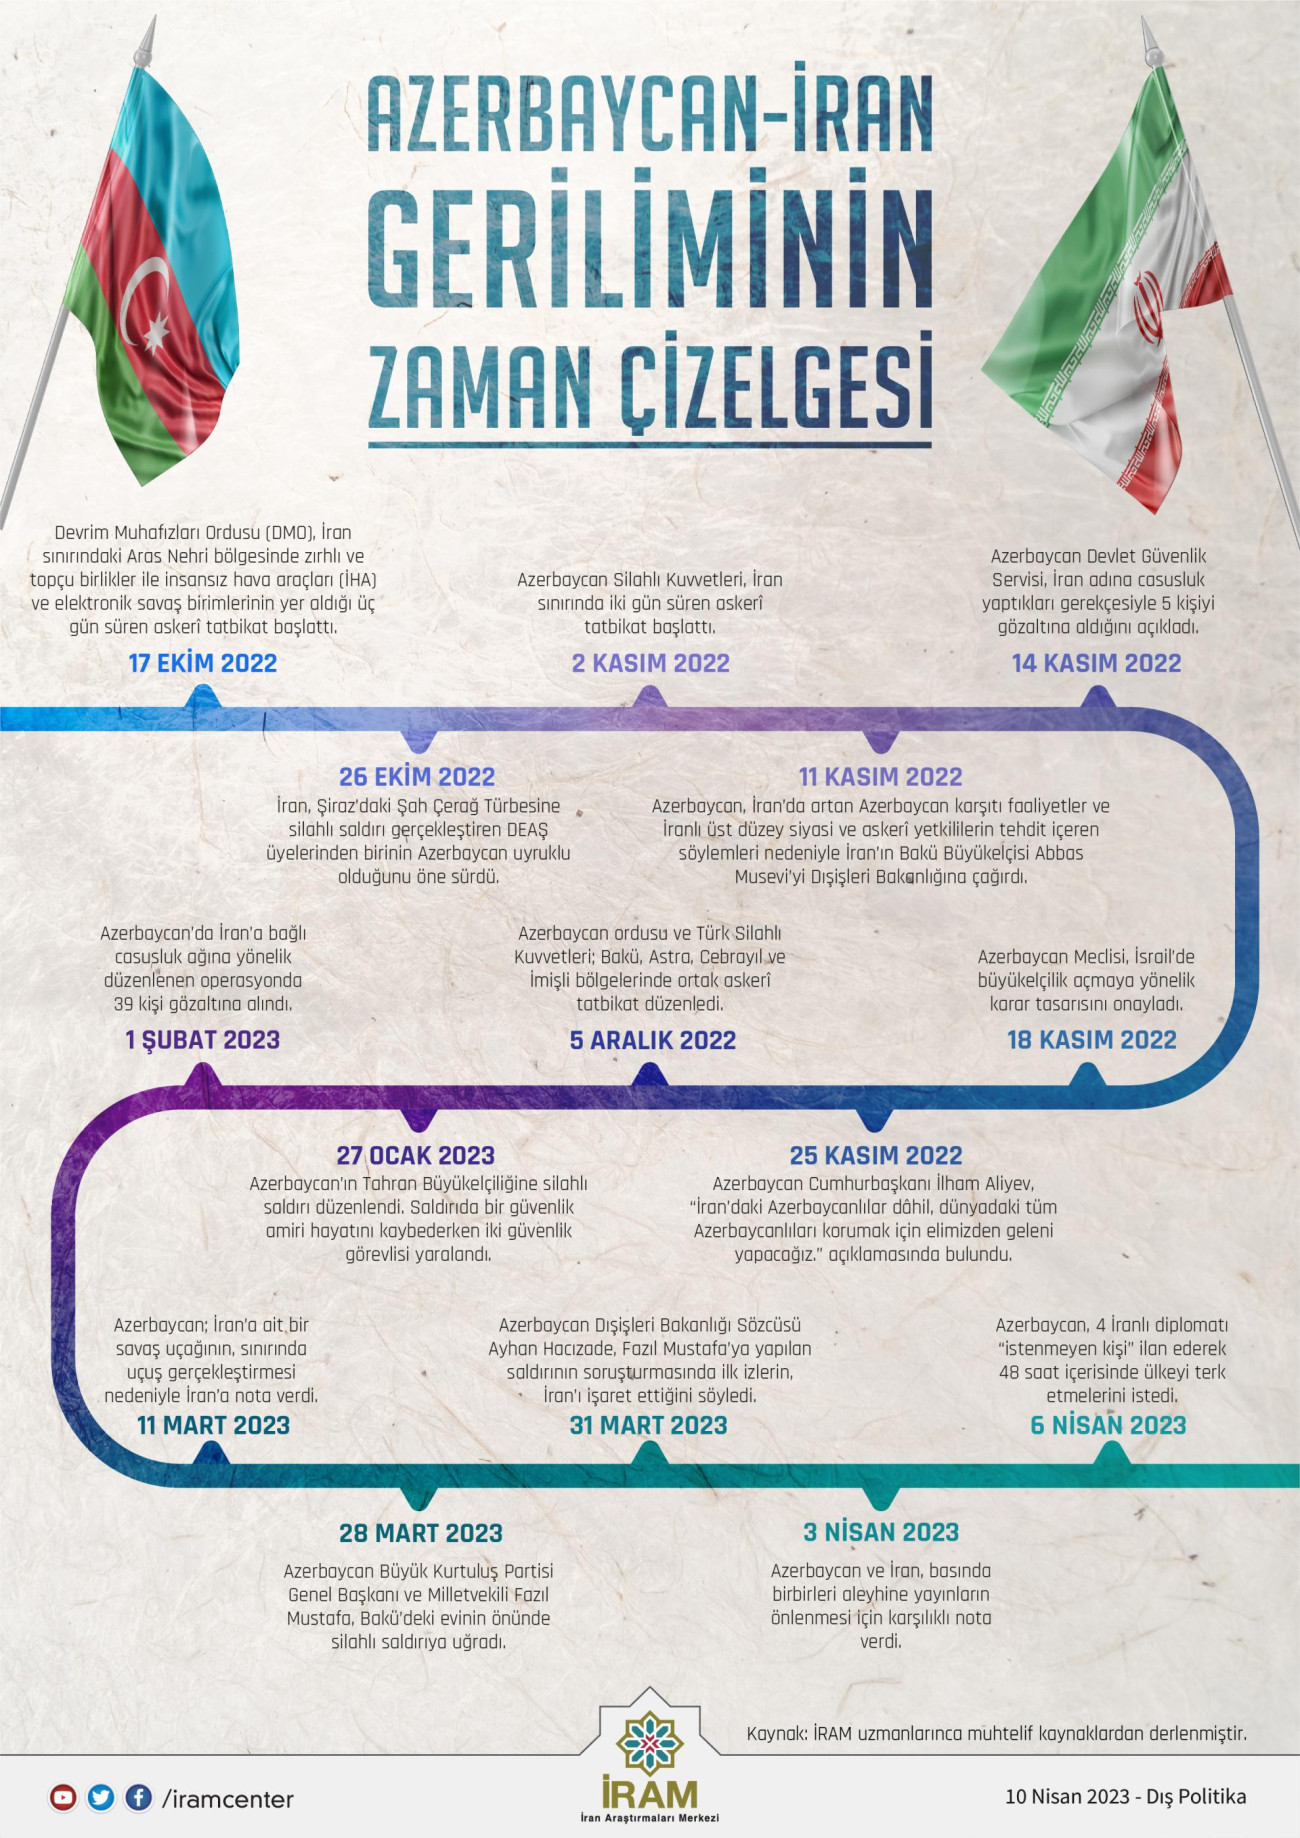 Azerbaycan-İran Geriliminin Zaman Çizelgesi